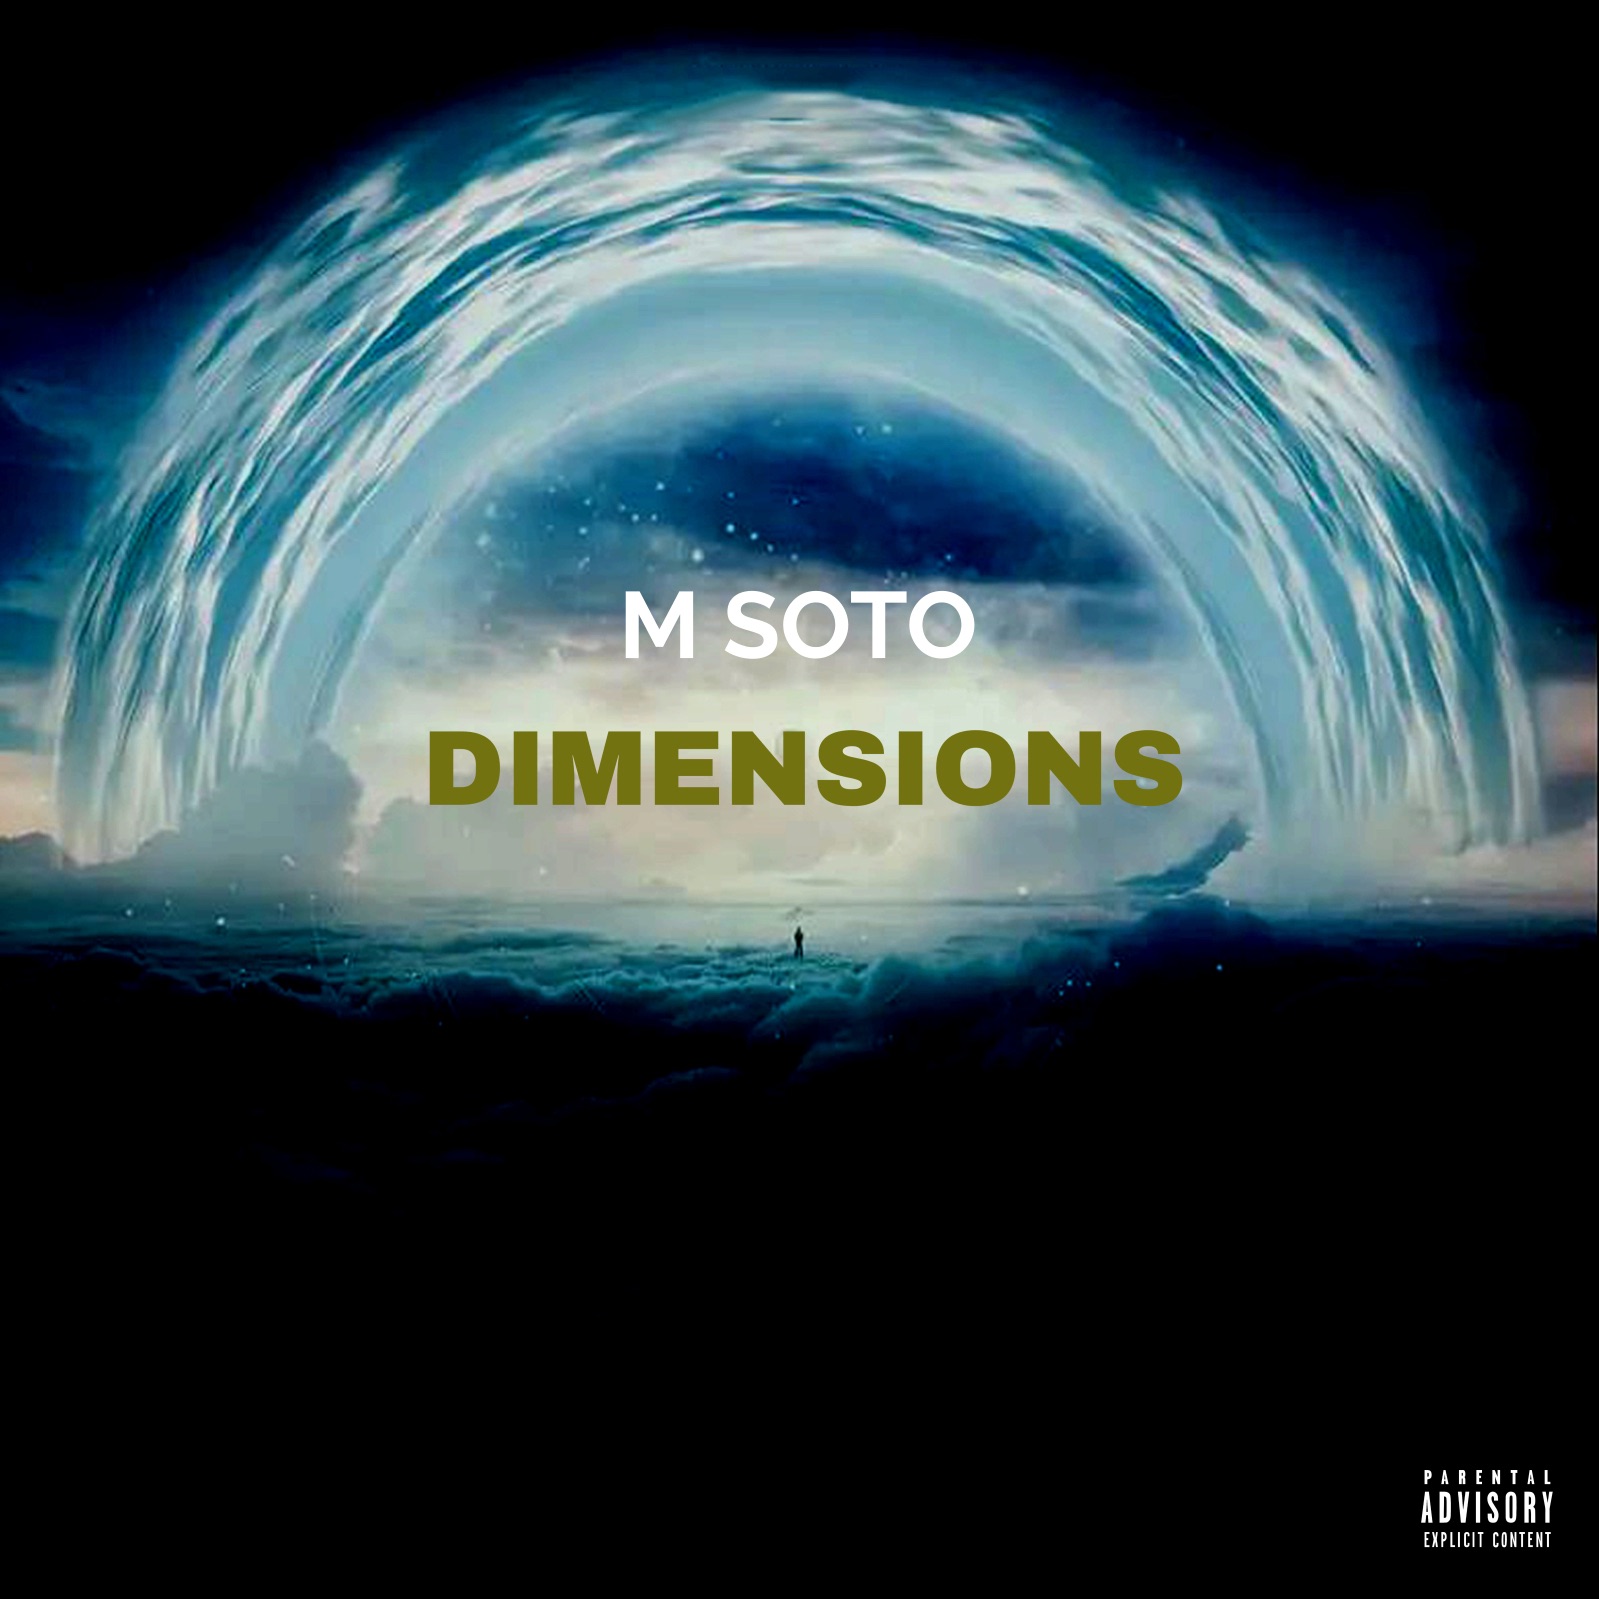 M Soto Tags Royce Da 5’9 For New Single, “Dimensions”